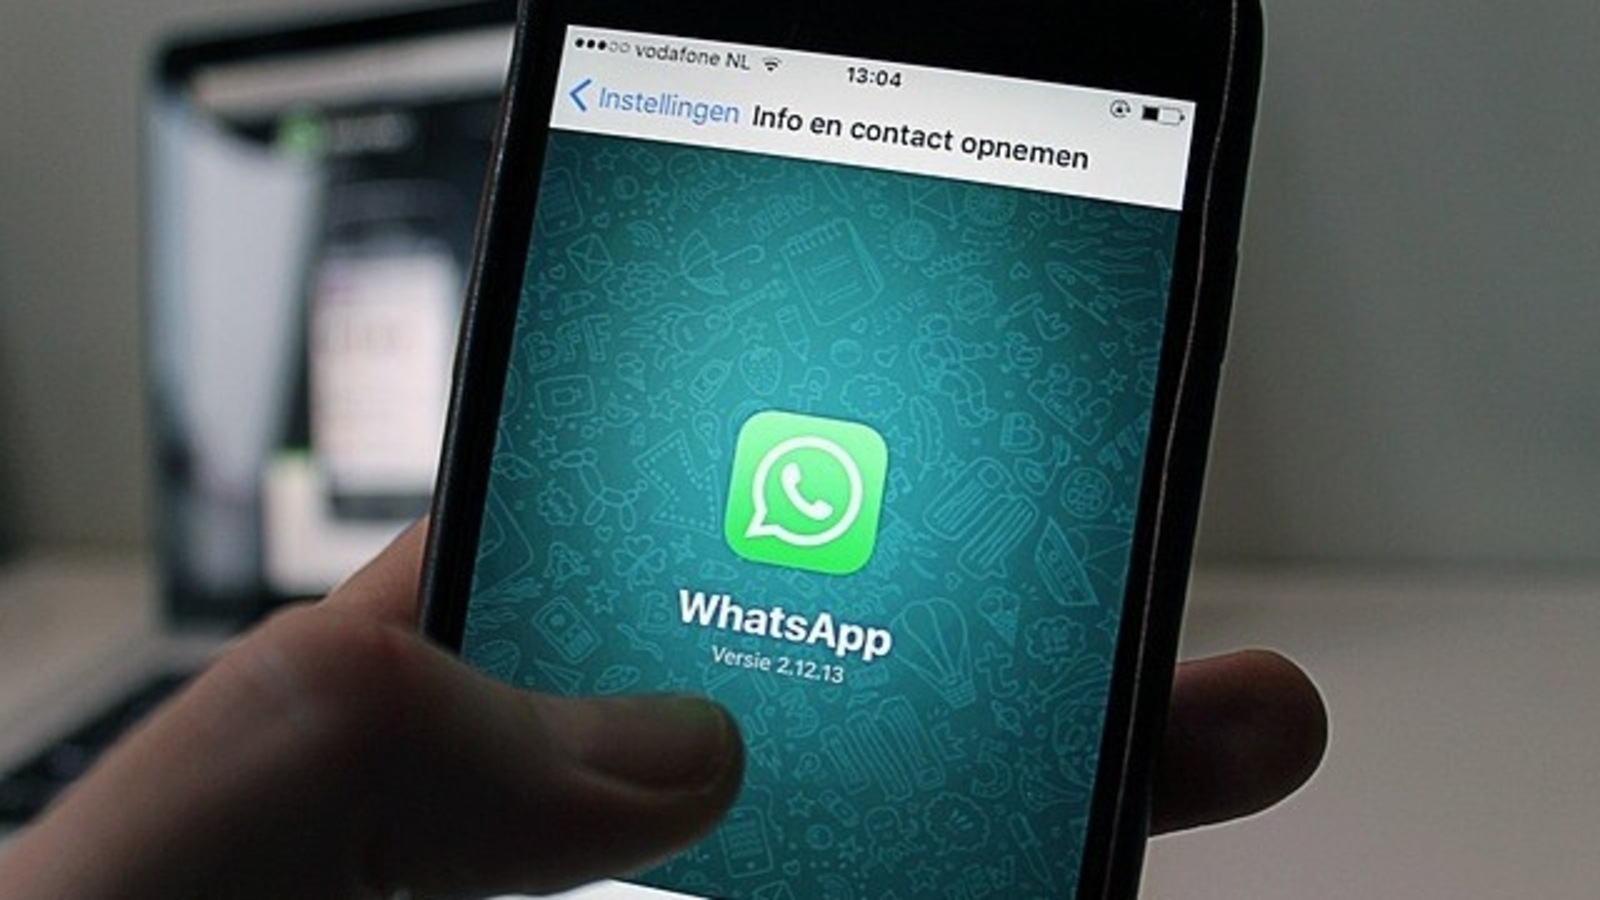 WhatsApp reemplazará números de teléfono con nombres de usuario: informe